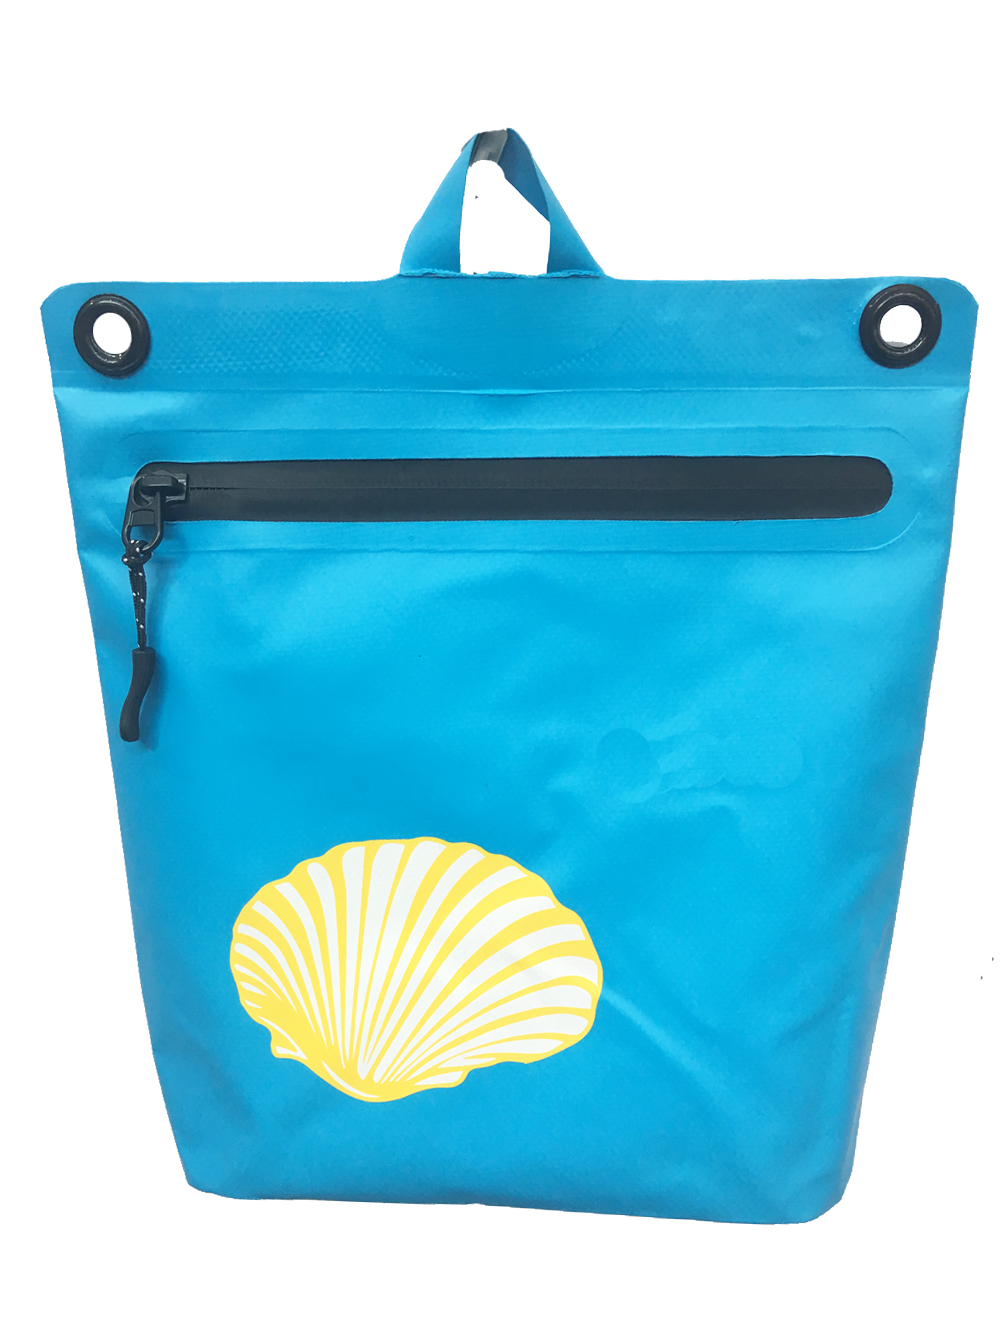 Невялікая воданепранікальная пляжная сумка - 5